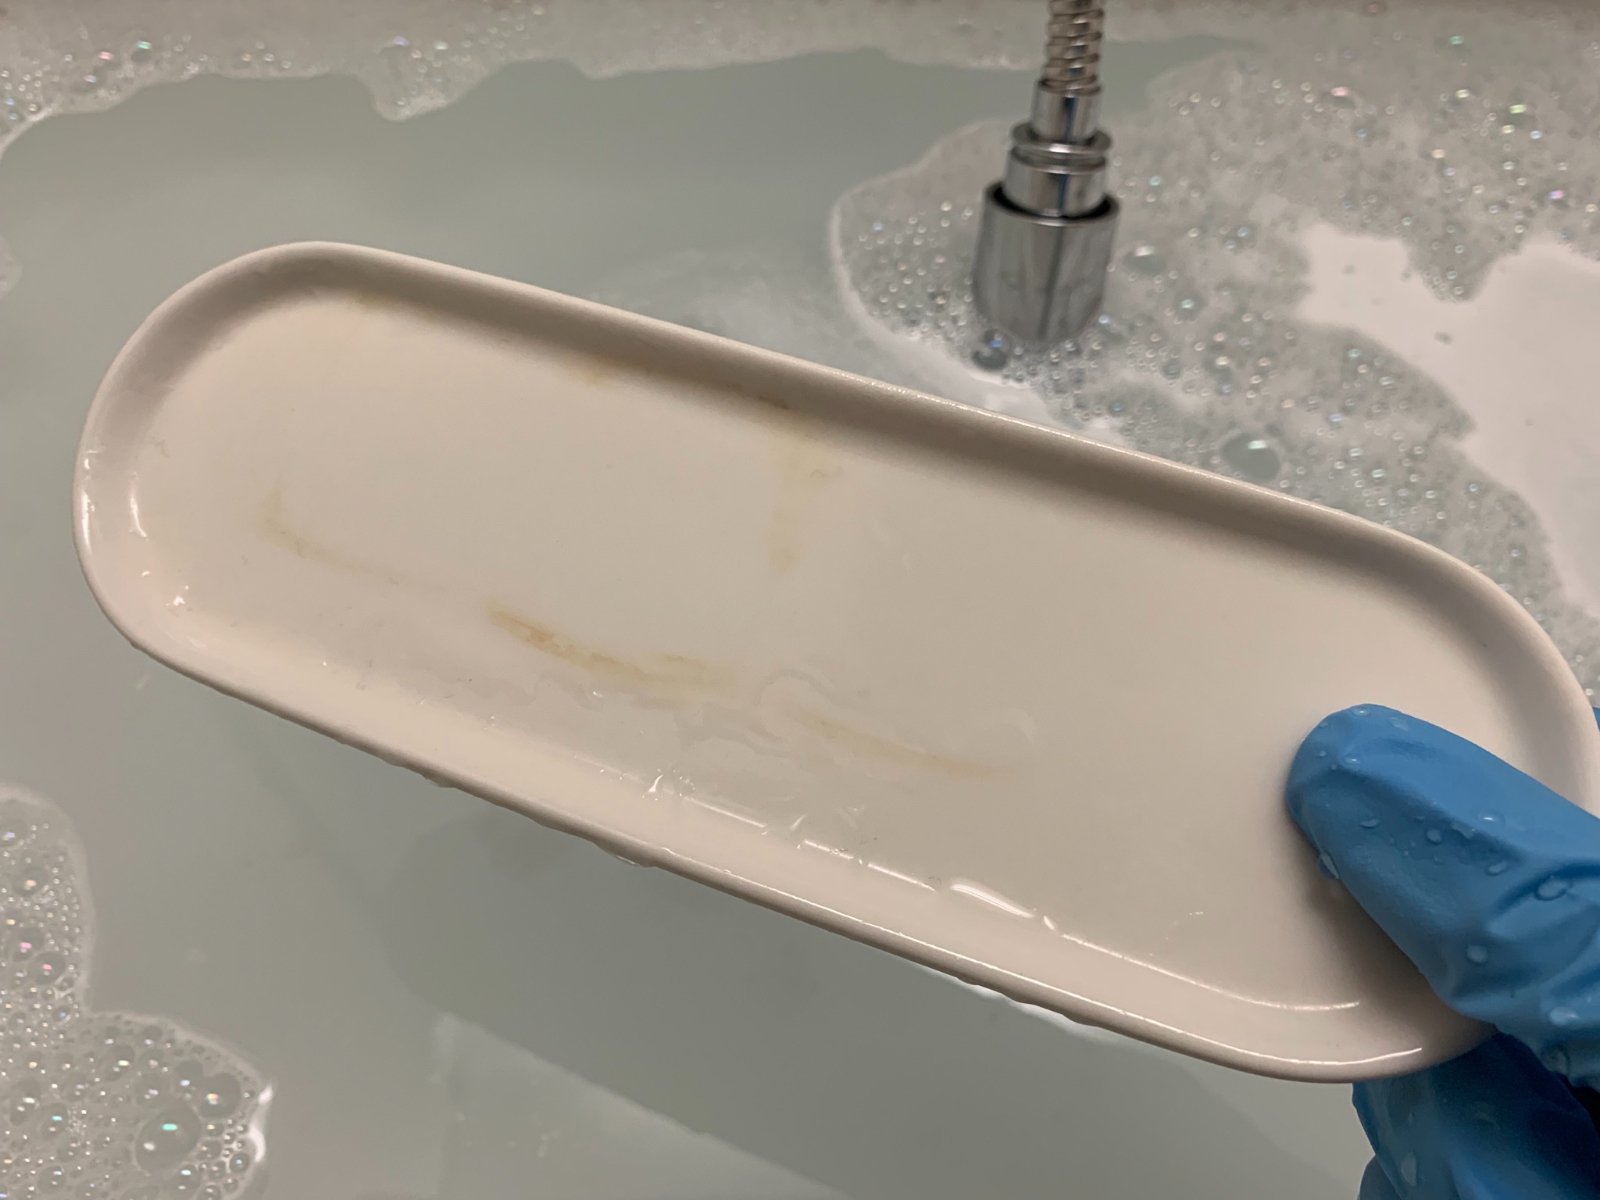 オキシクリーンで洗面台を掃除 つけ置きしただけでこんなにも真っ白に 黒カビや水垢を撃退